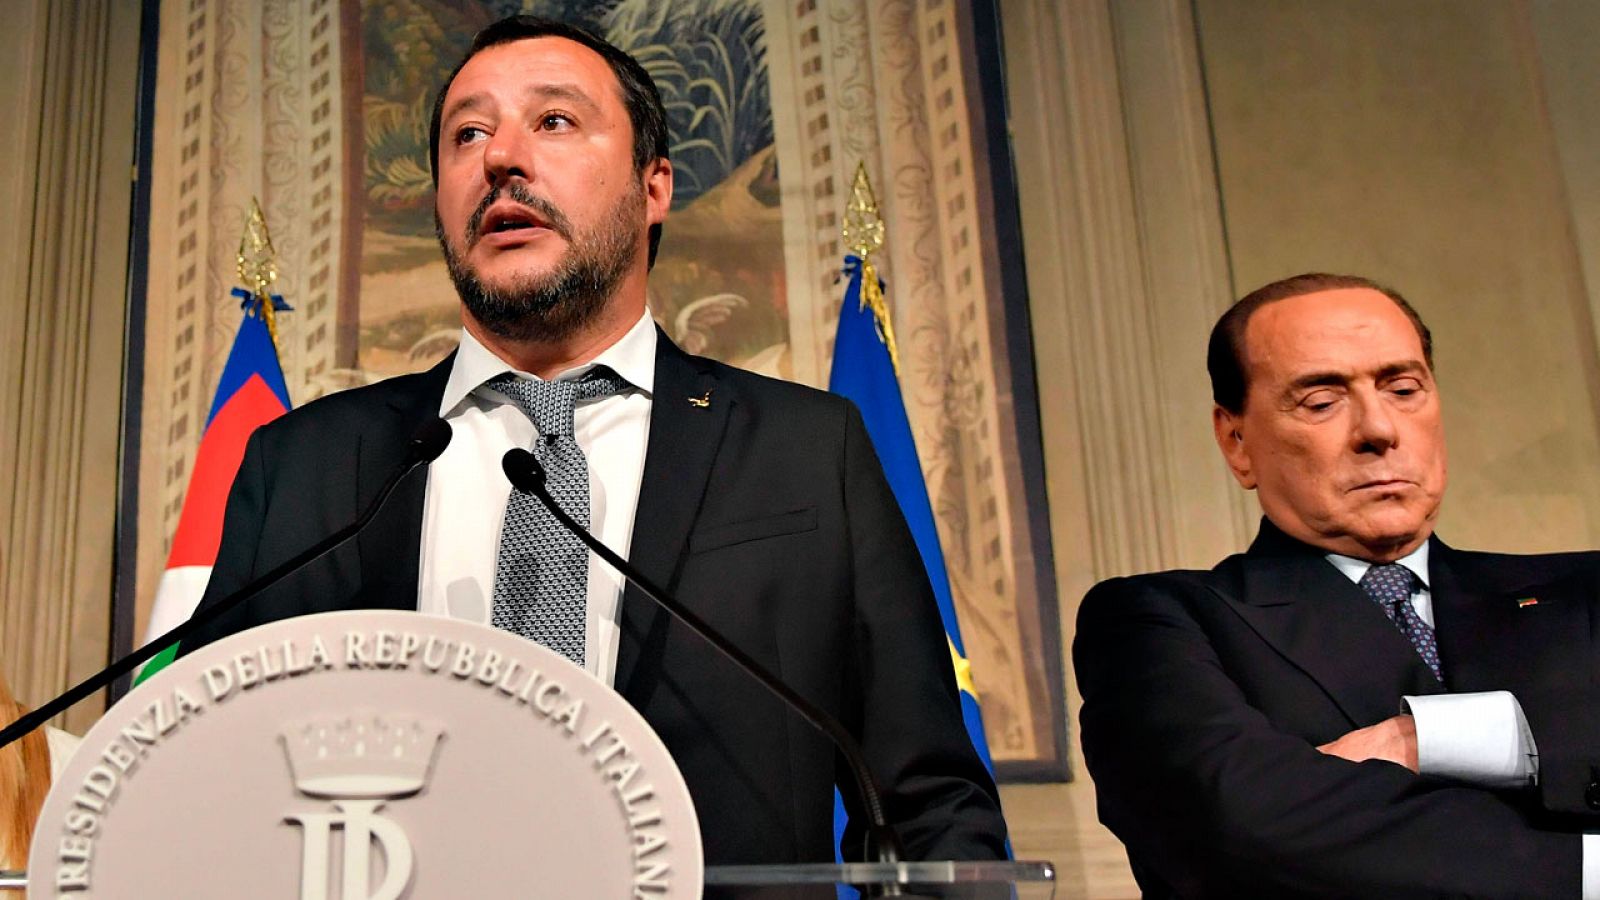 Matteo Salvini y Silvio Berlusconi, durante la última ronda de conversaciones para formar gobierno en Italia